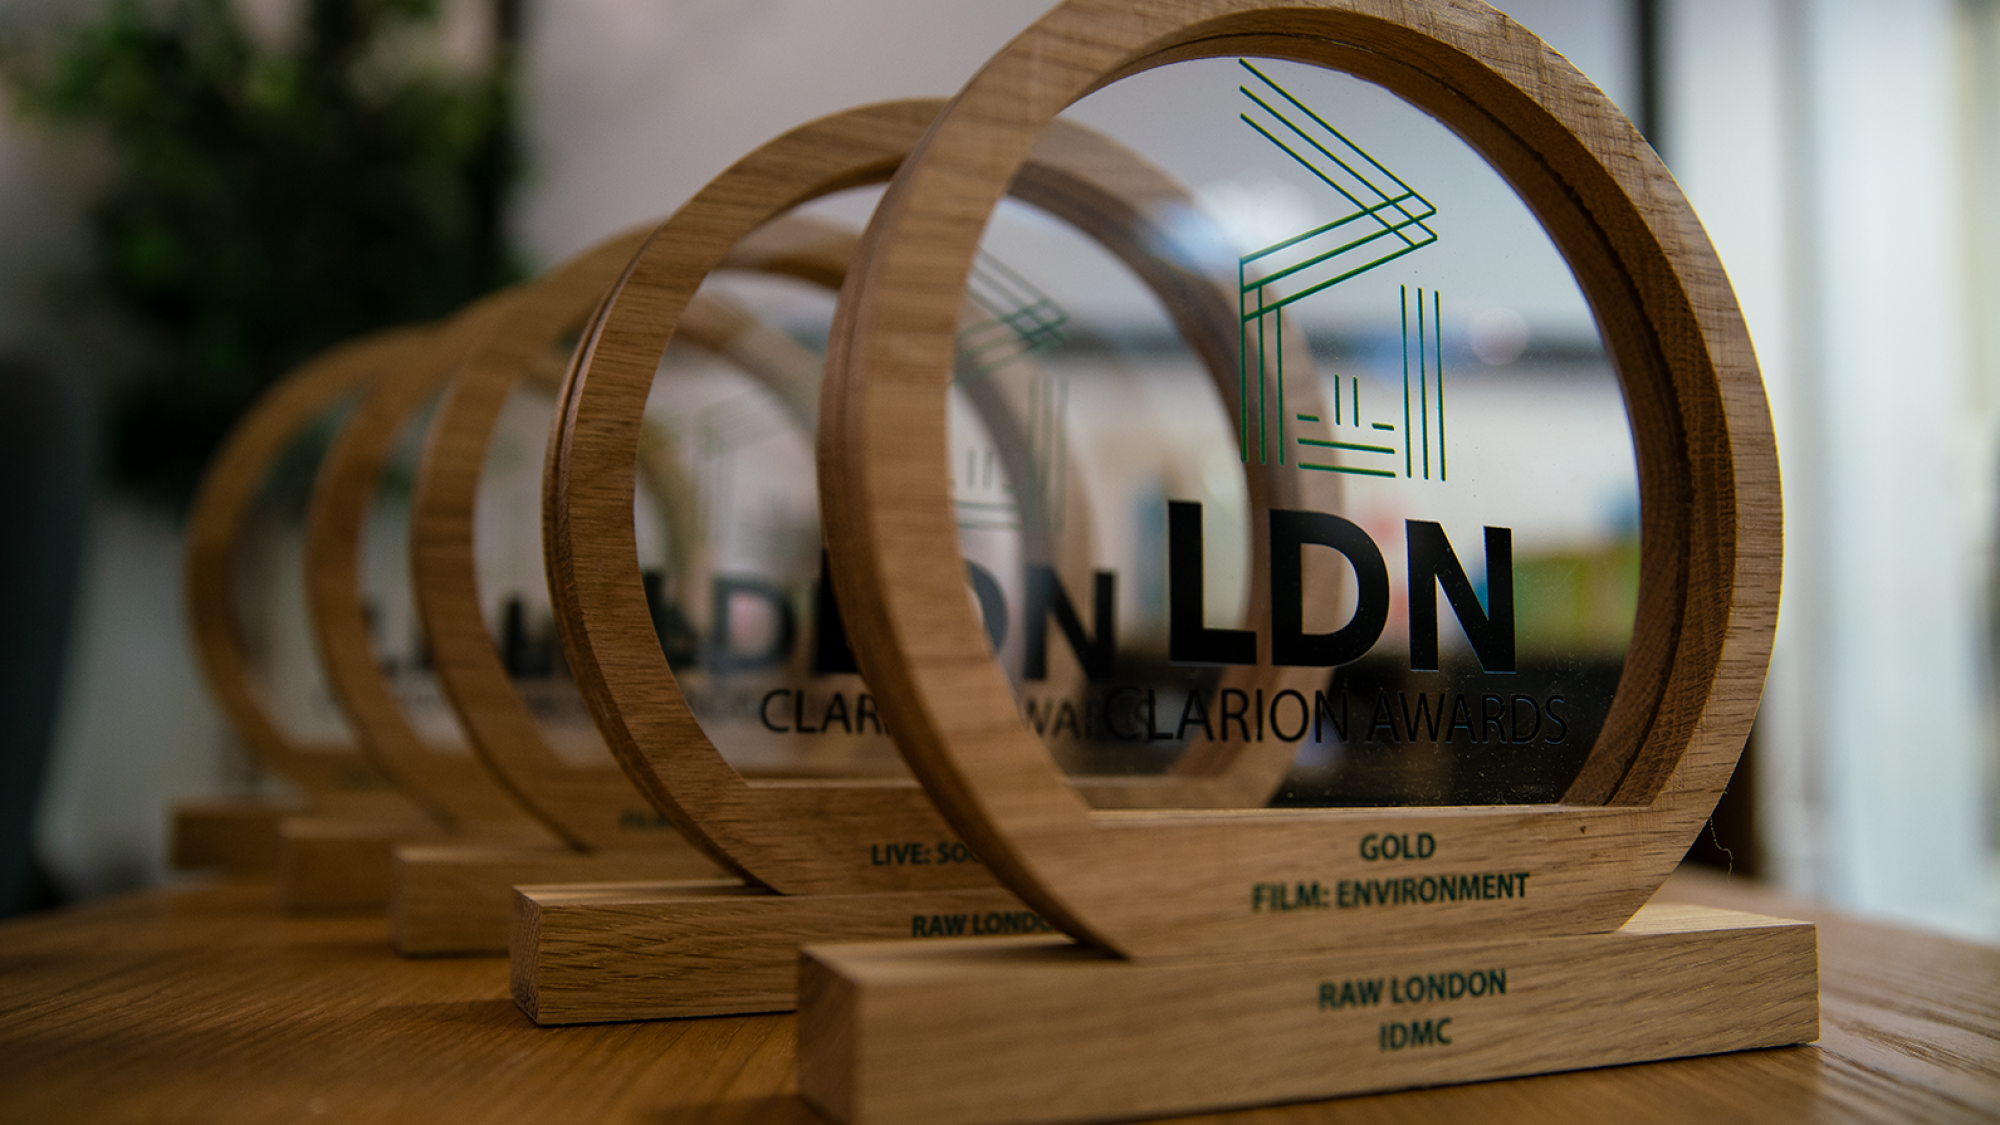 EVCOM Clarion Awards 2019 trophies